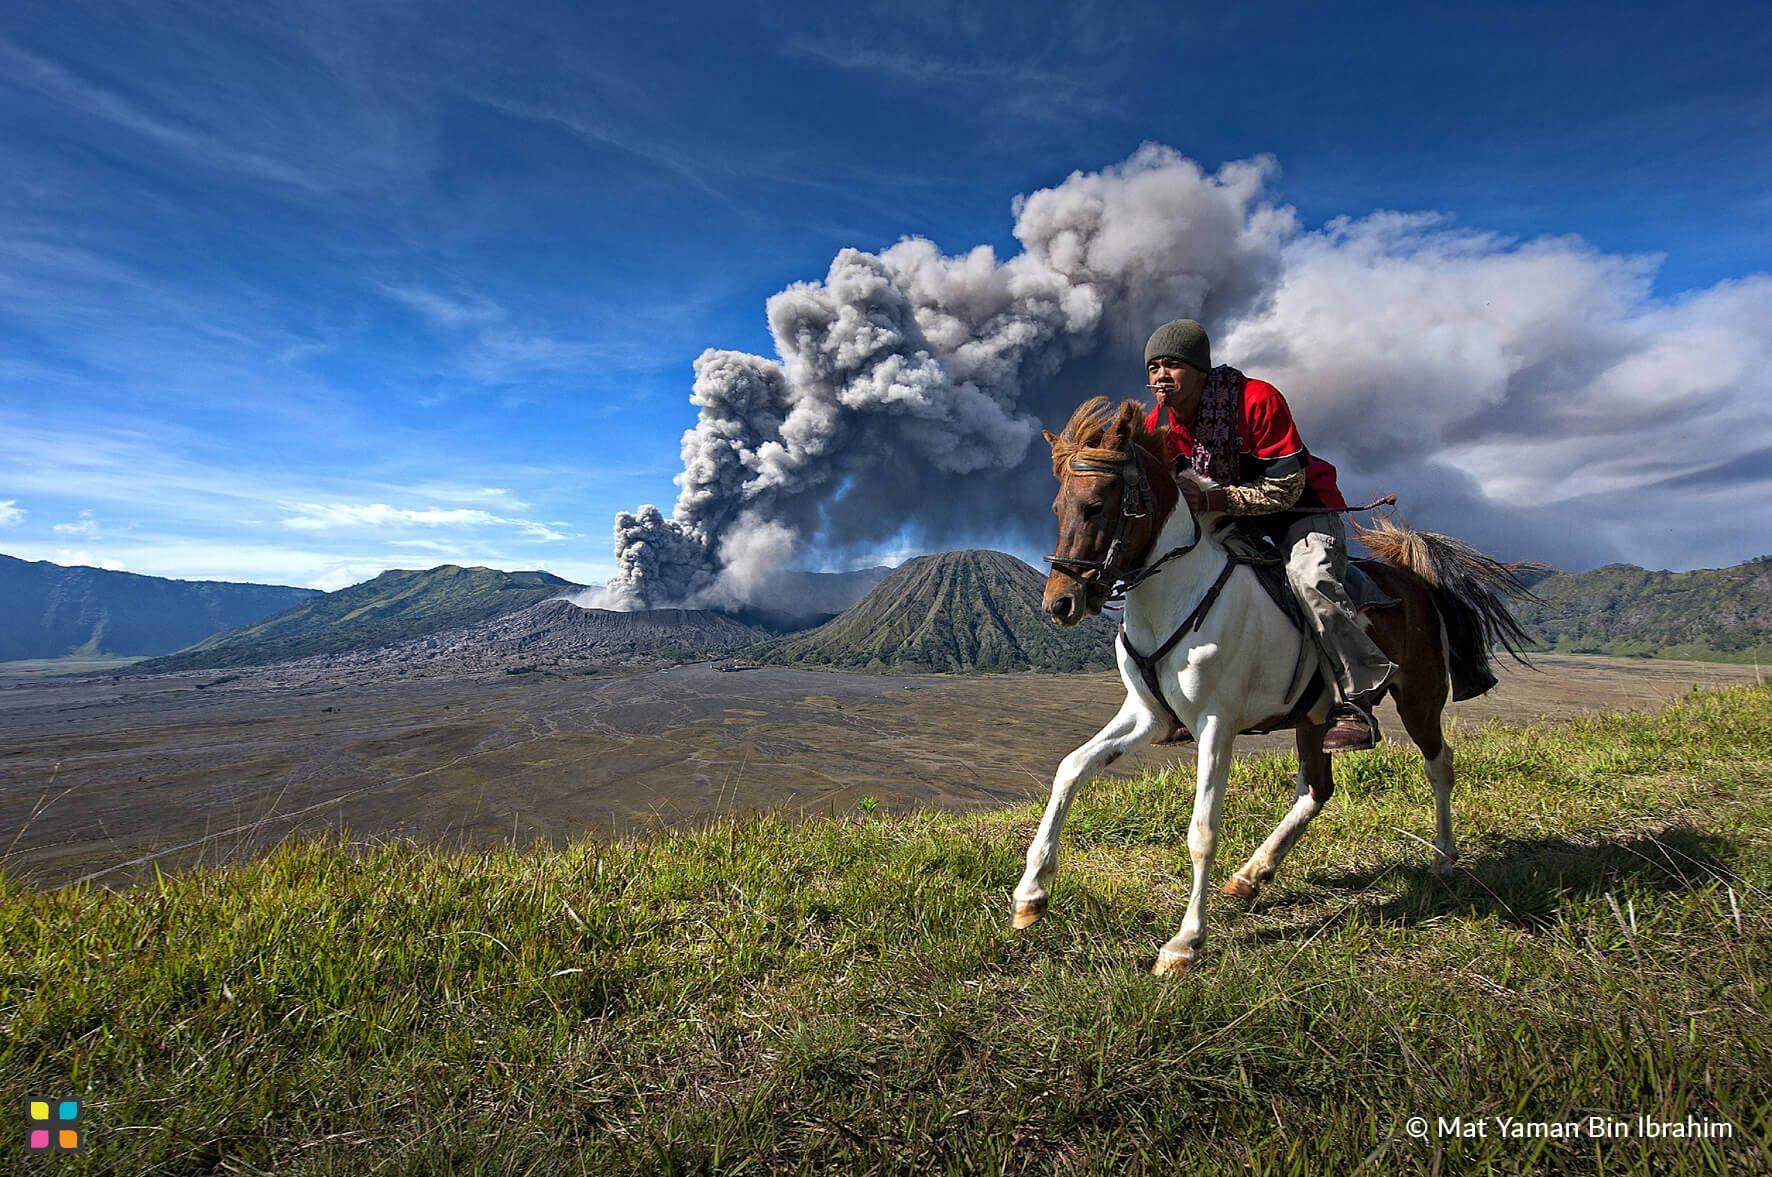 رجل على من متن حصان يعدو مبتعدًا عن جبل برومو، البركان الإندونيسي النشط.
المصور: مات يمان بن إبراهيم المكان: جاوة الشرقية، إندونيسيا